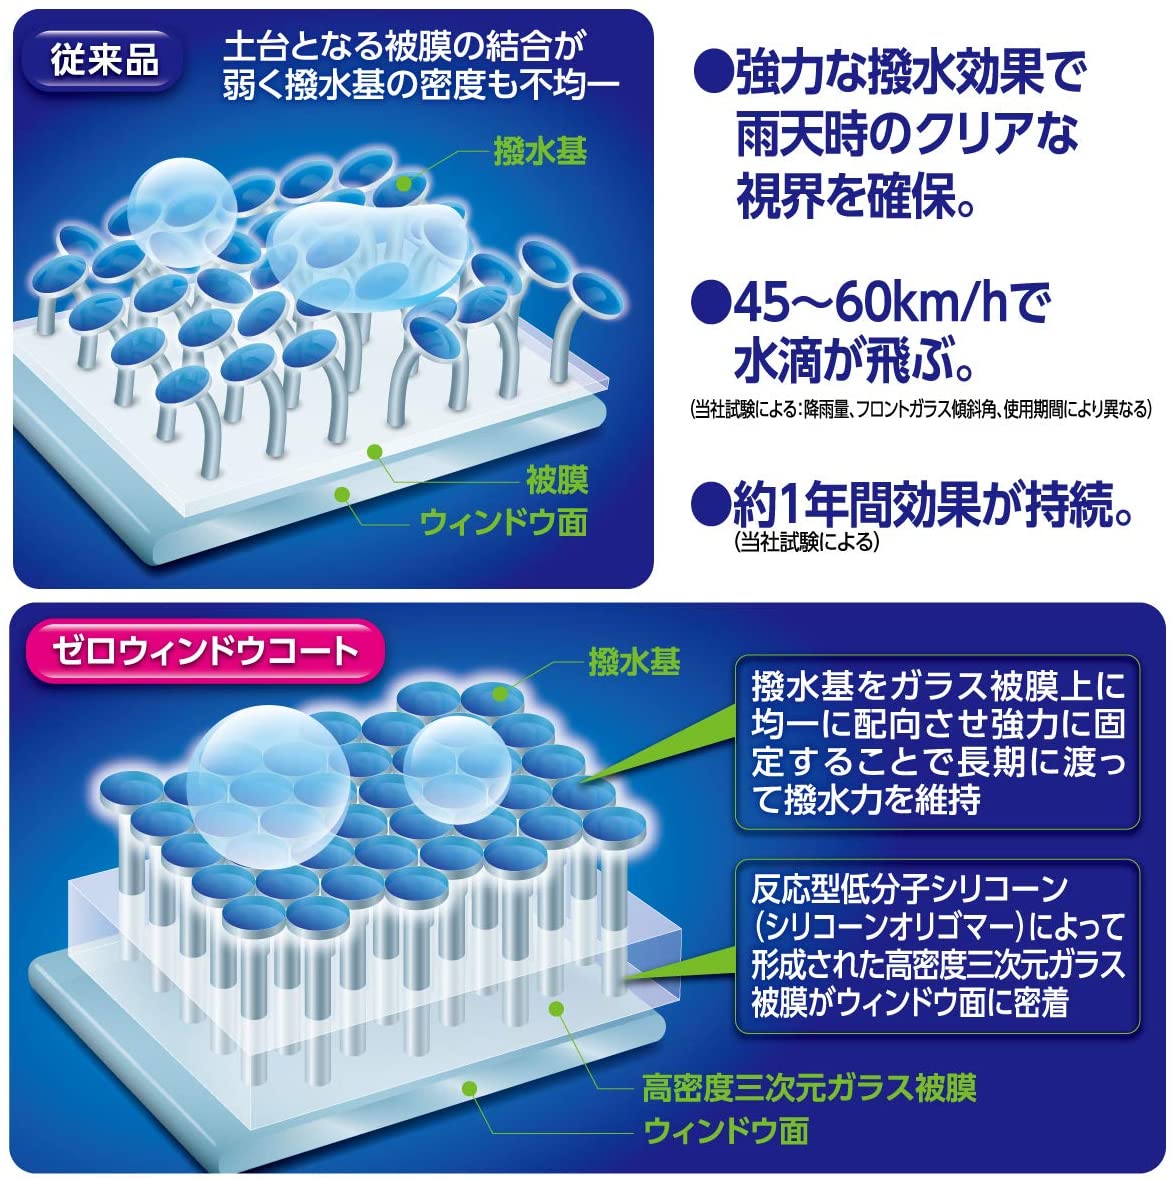 Japan SurLuster "Rain Repellent" Zero Window Coat (1 year) (Made in Japan)